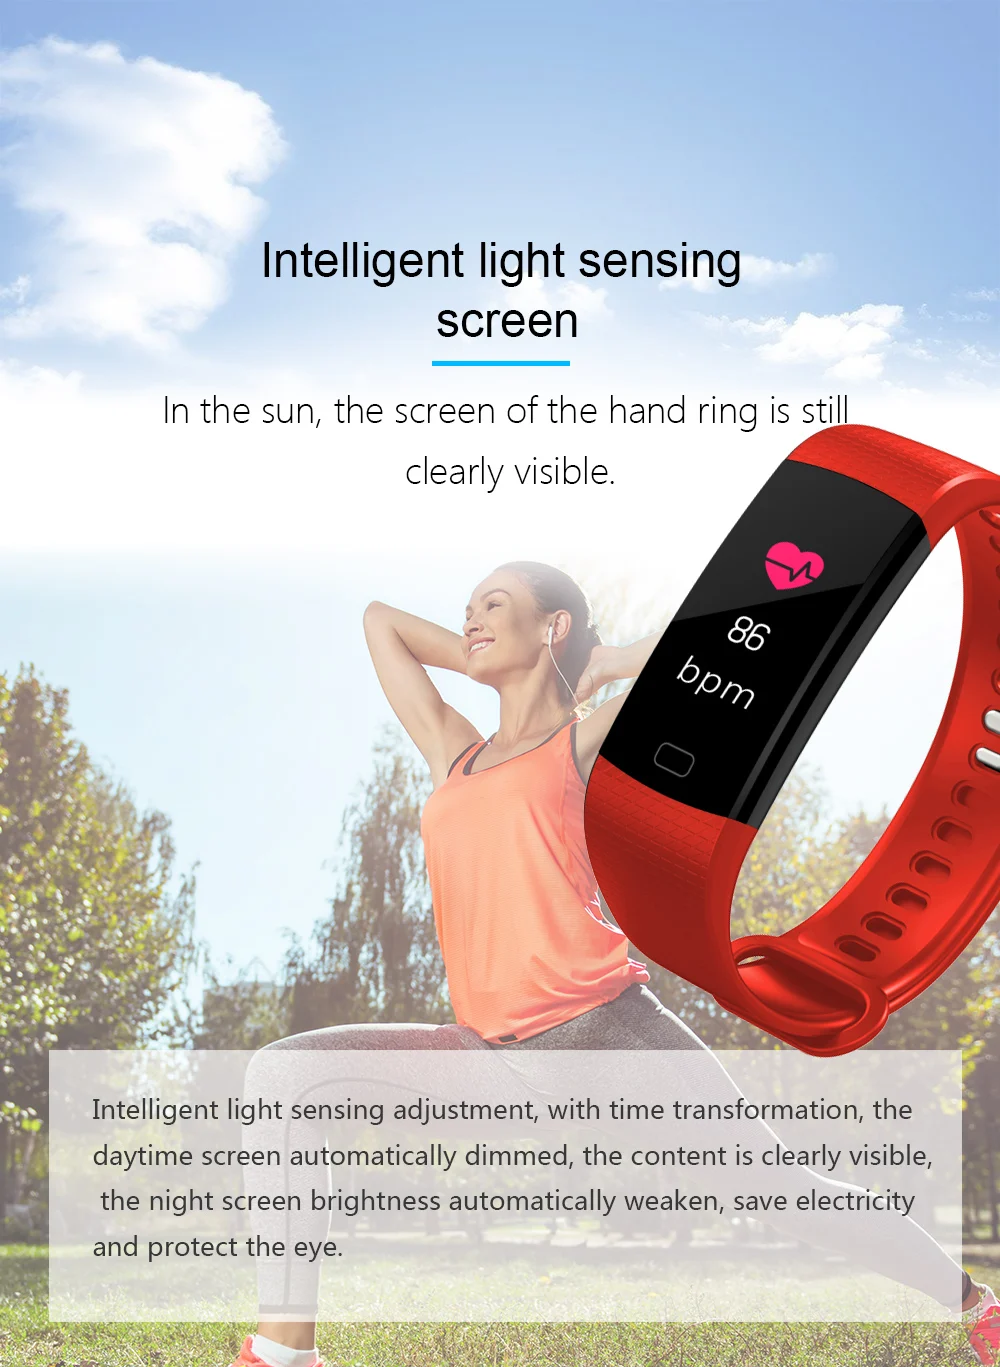 Смарт-часы кровяное давление смарт-будильник смарт-браслет цветной экран монитор сердечного ритма активности фитнес-трекер